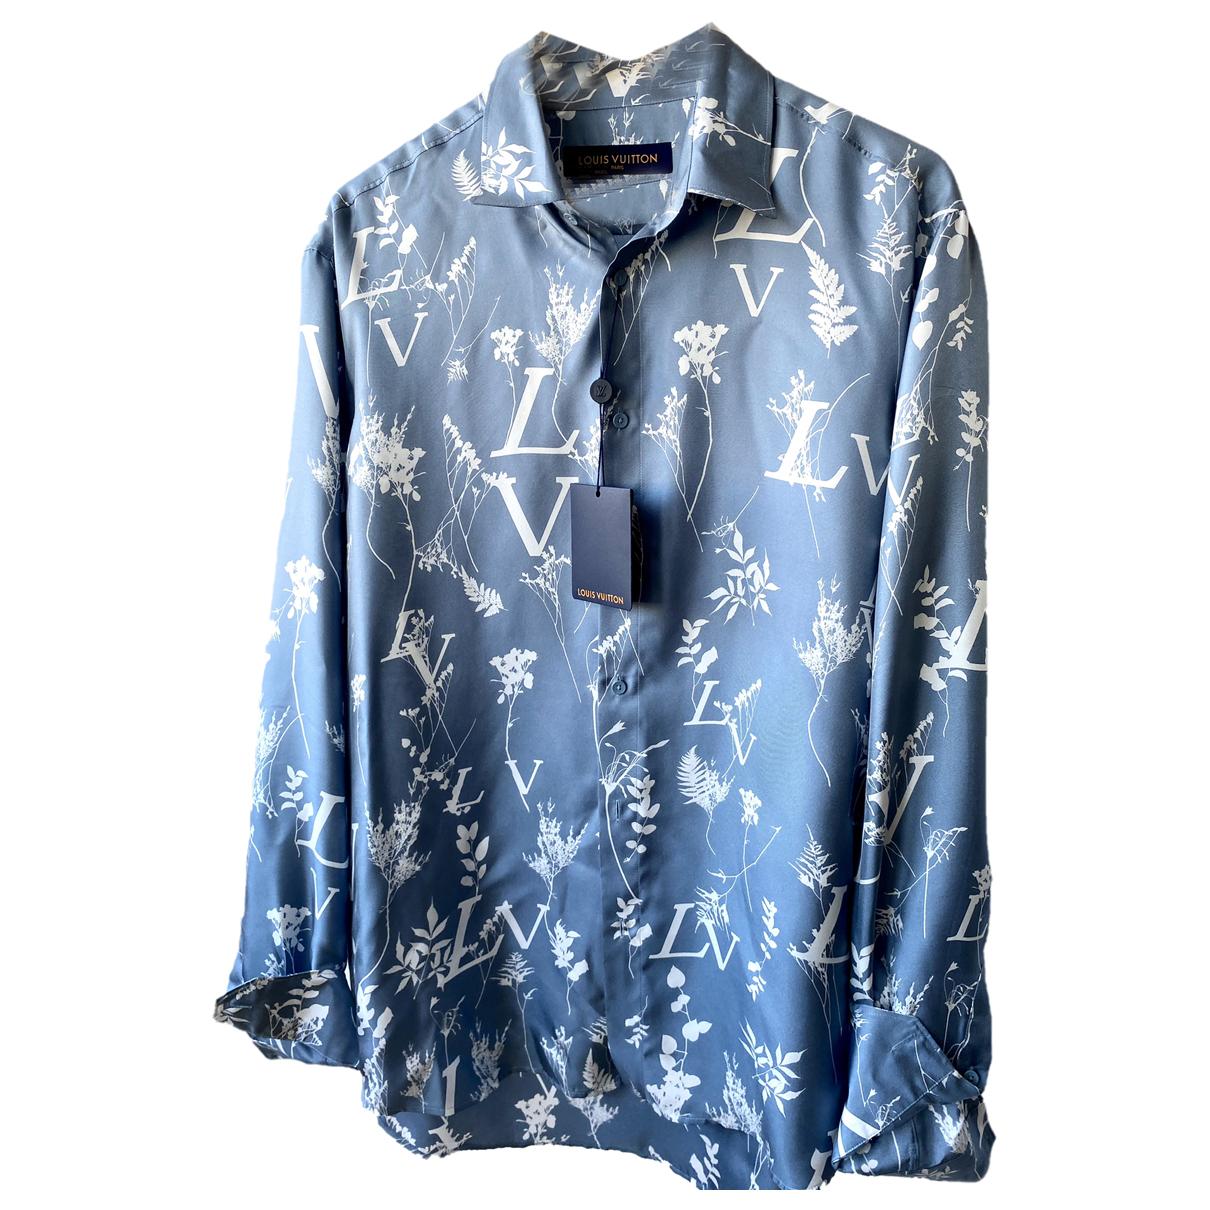 Camisas Louis Vuitton de color azul para Hombre - Vestiaire Collective